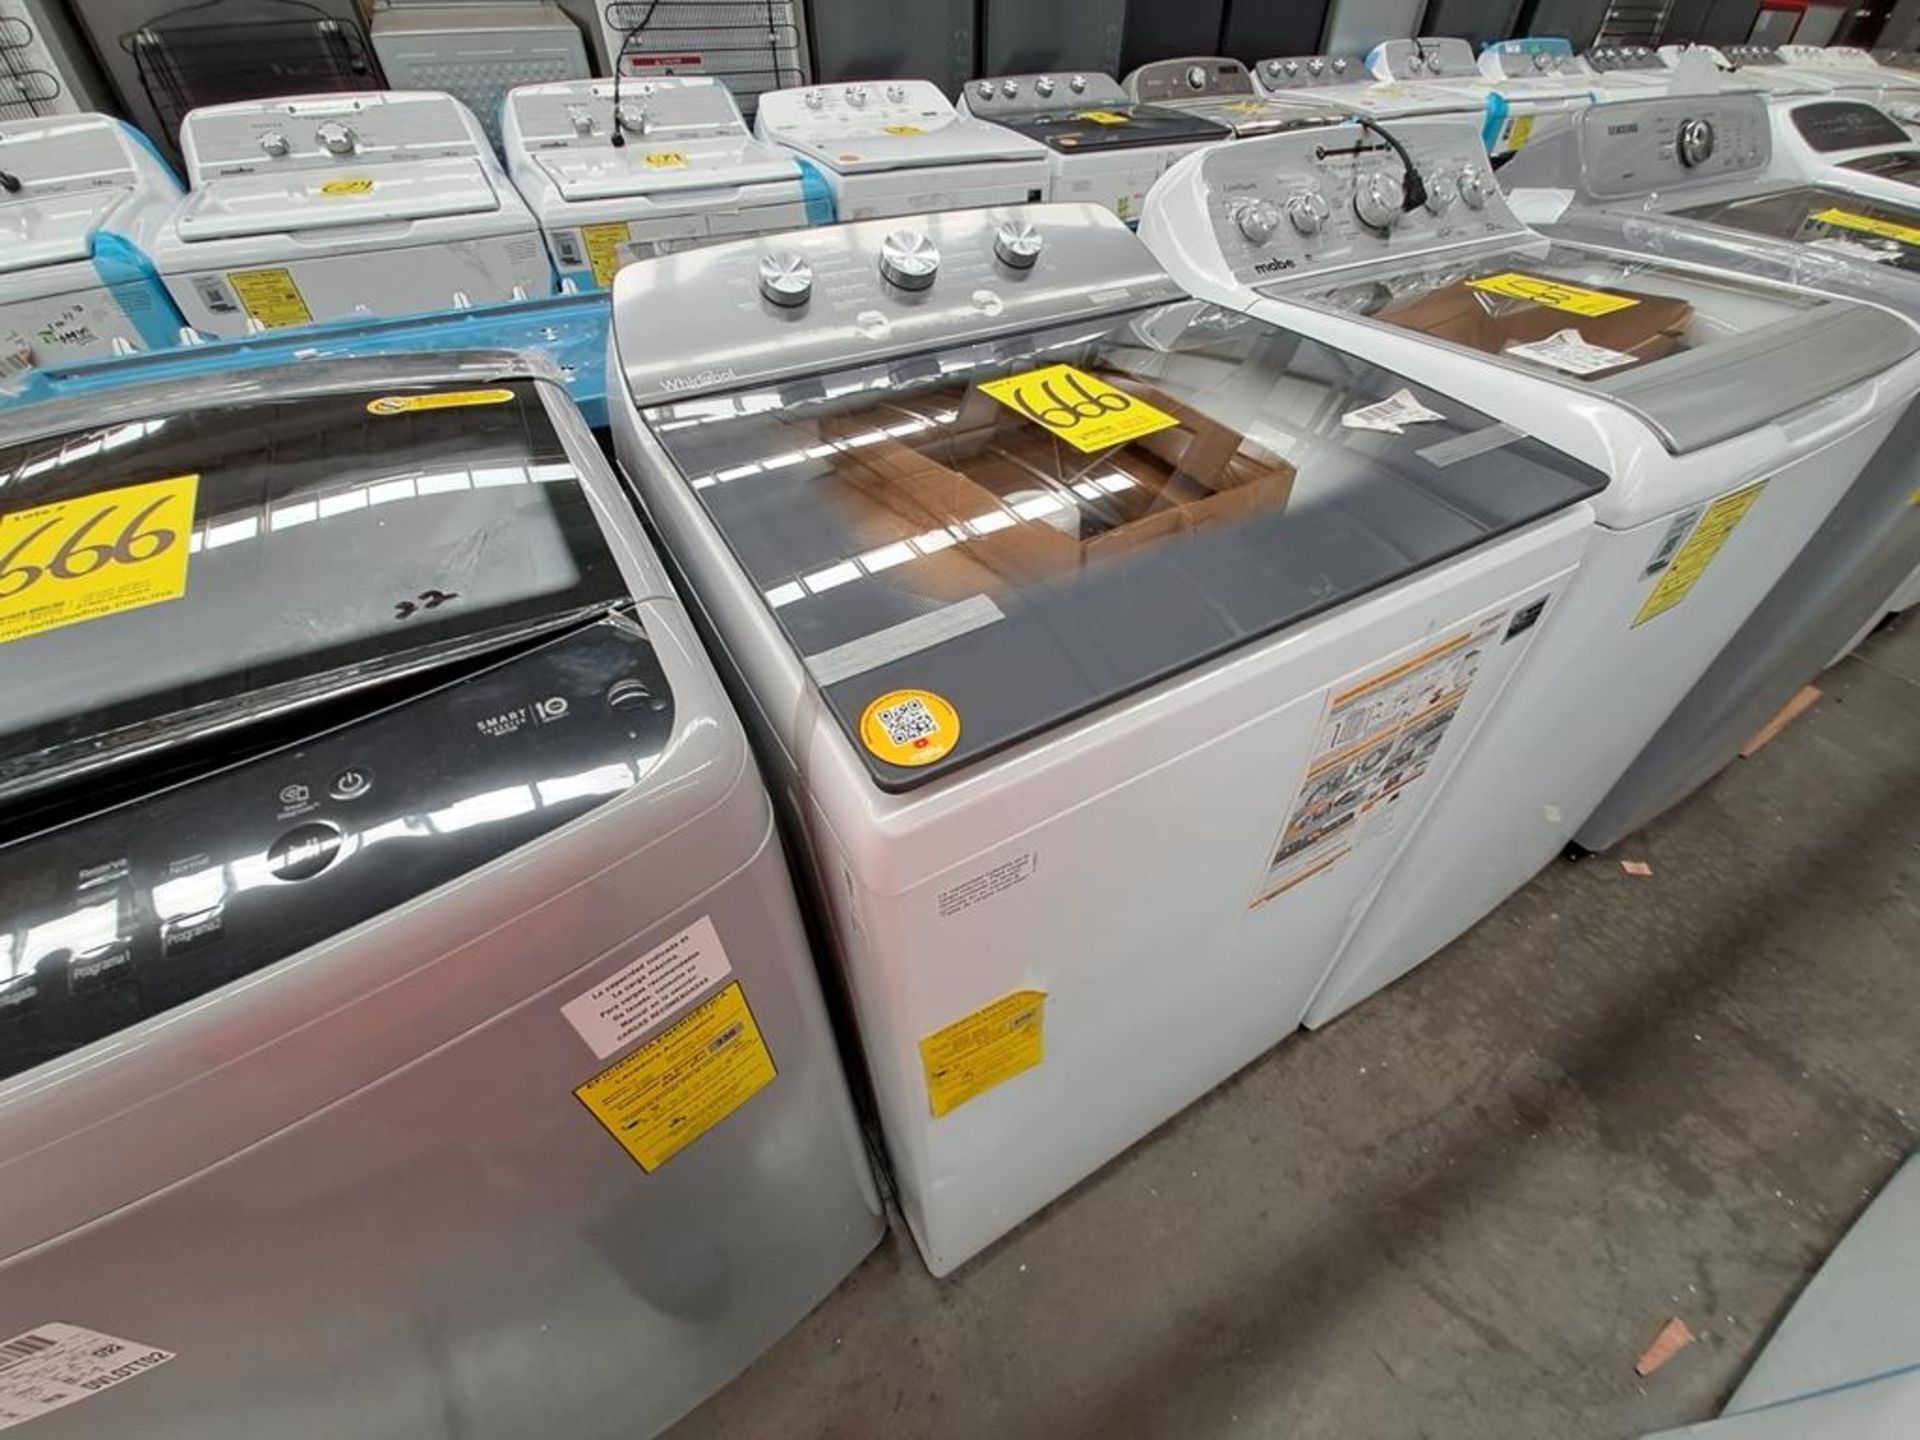 Lote de 2 lavadoras contiene: 1 Lavadora de 18 KG Marca LG, Modelo WT18DS8P, Serie ND, Color GRIS; - Image 5 of 8